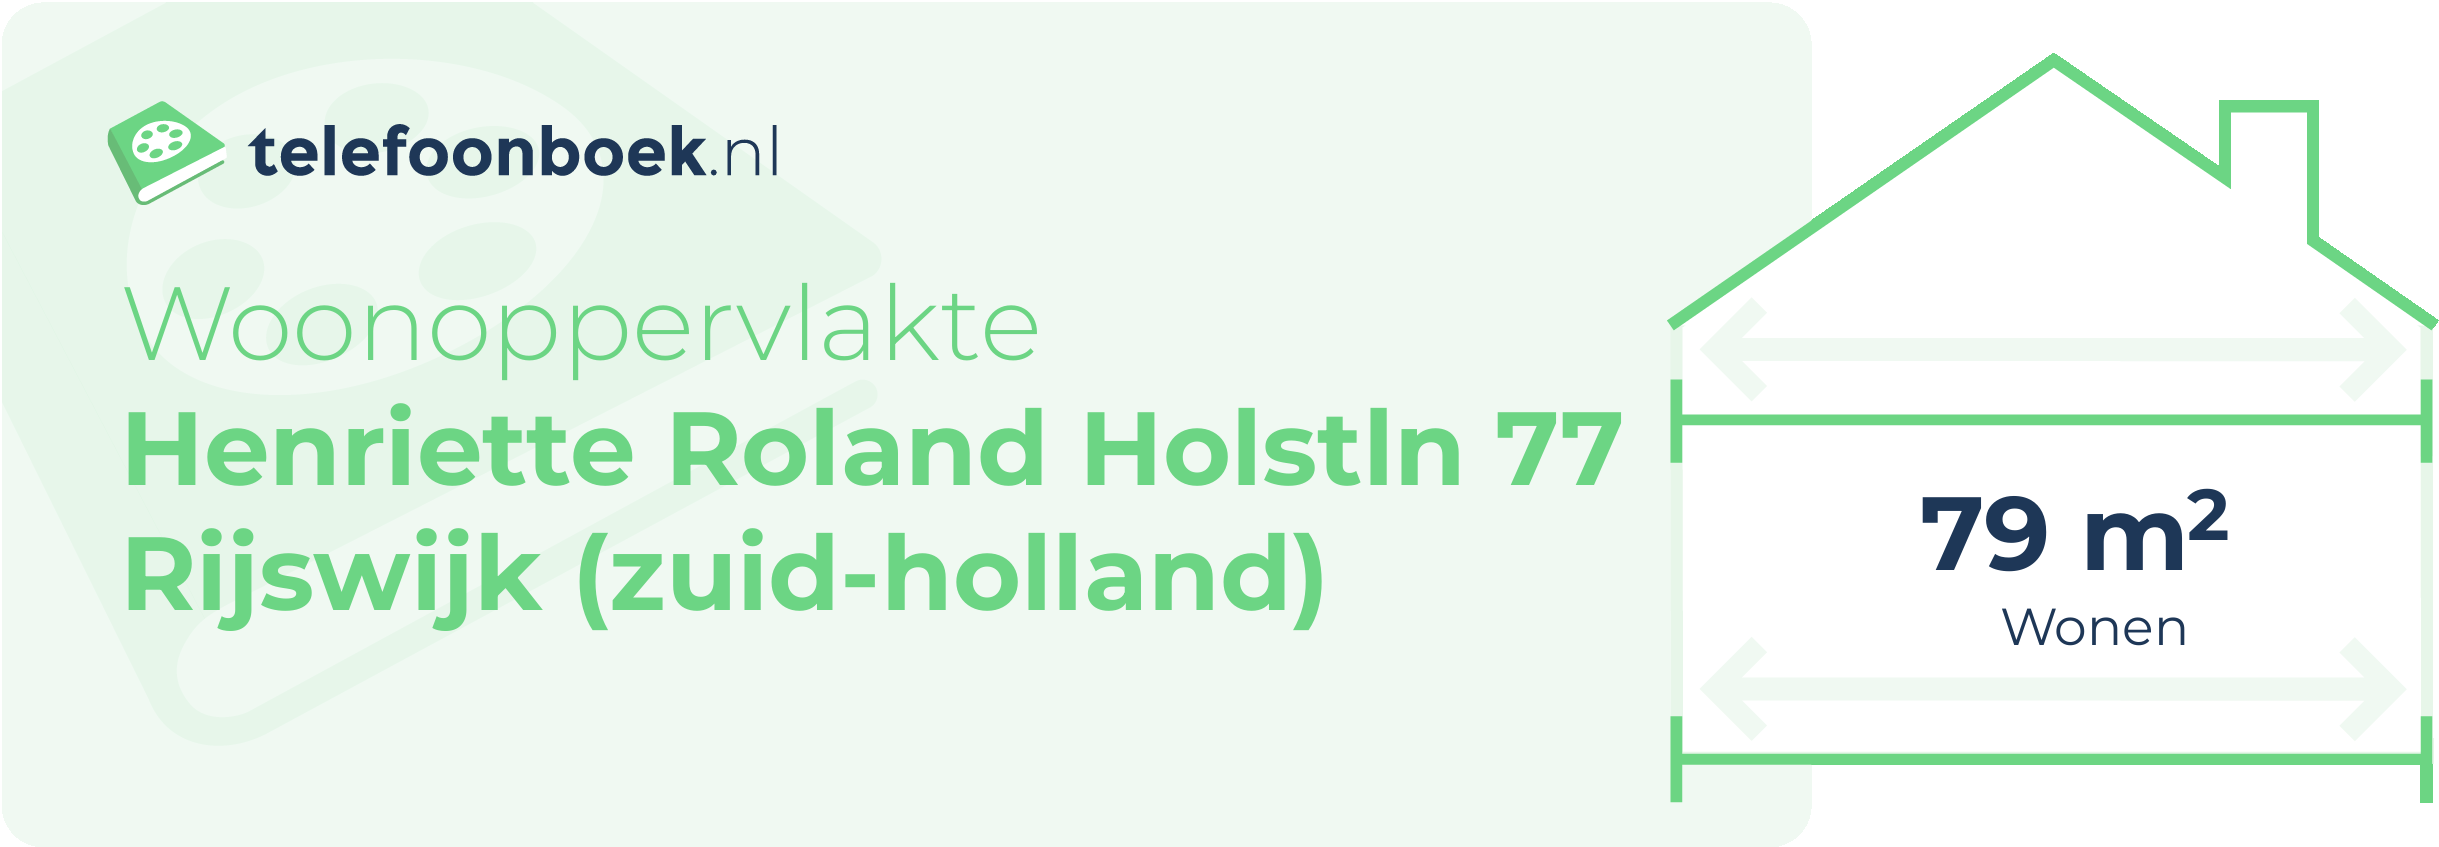 Woonoppervlakte Henriette Roland Holstln 77 Rijswijk (Zuid-Holland)